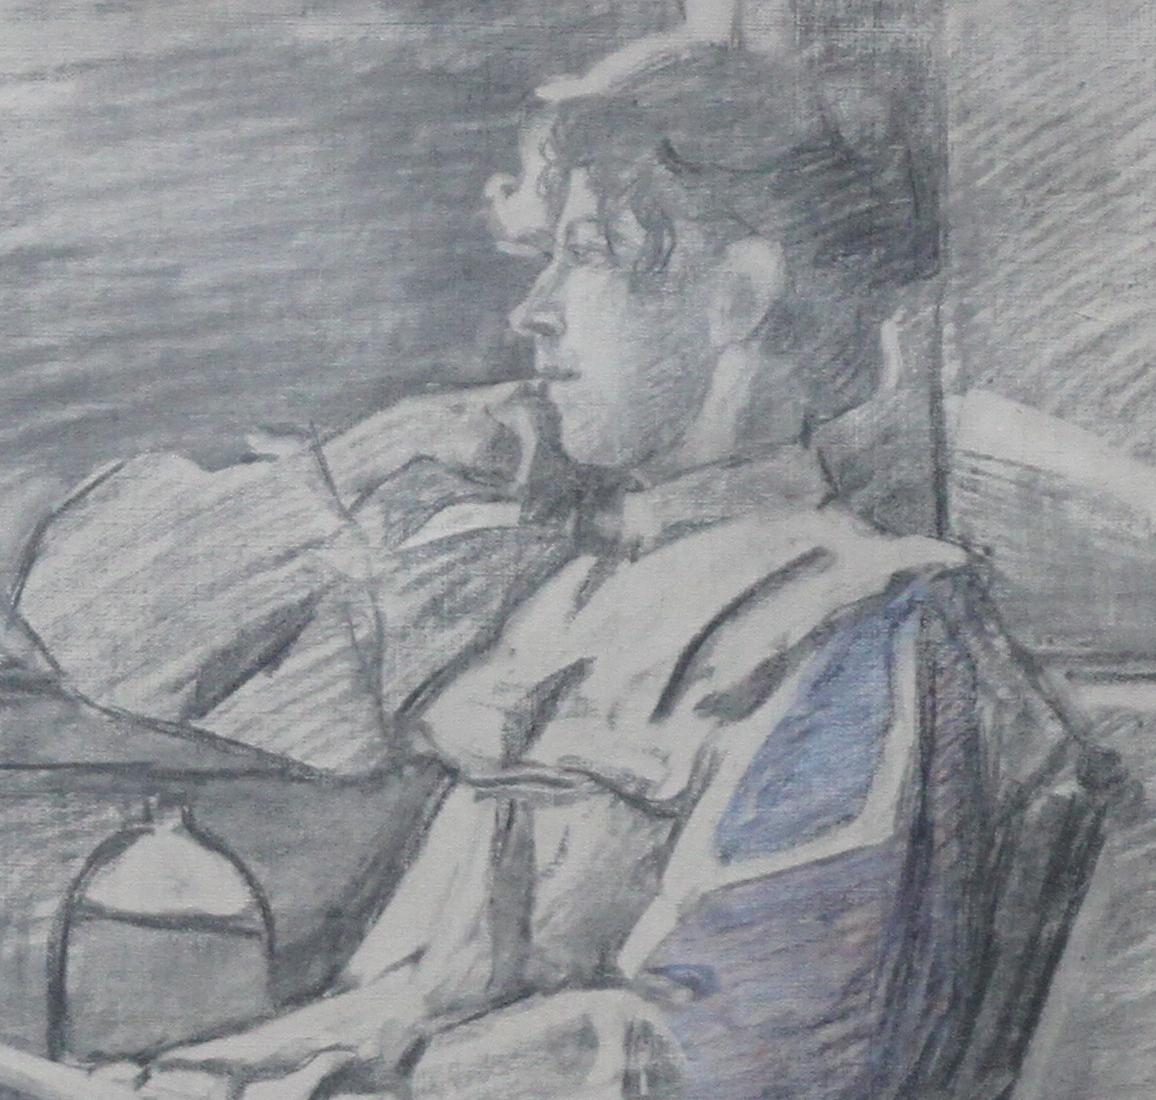 Diese schöne Bleistift- und Kohlezeichnung wird dem Kreis des bekannten französischen Künstlers Jacques Joseph Tissot zugeschrieben. Die um 1880 entstandene Zeichnung zeigt eine Frau, die sich in einem Liegestuhl im Freien ausruht, in Kontemplation